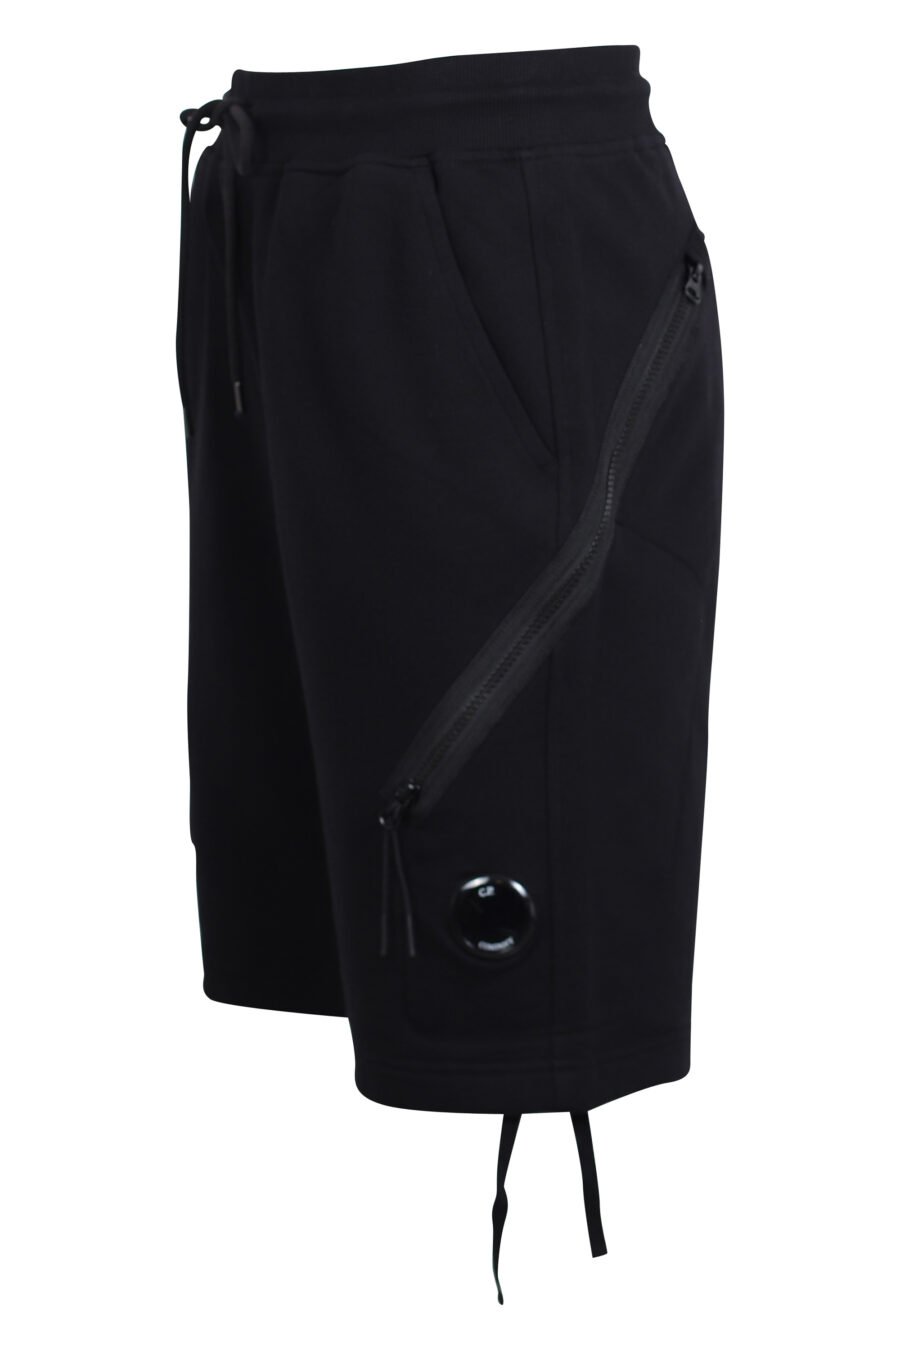 Pantalón corto negro estilo cargo con bolsillos diagonales y minilogo circular - IMG 2462